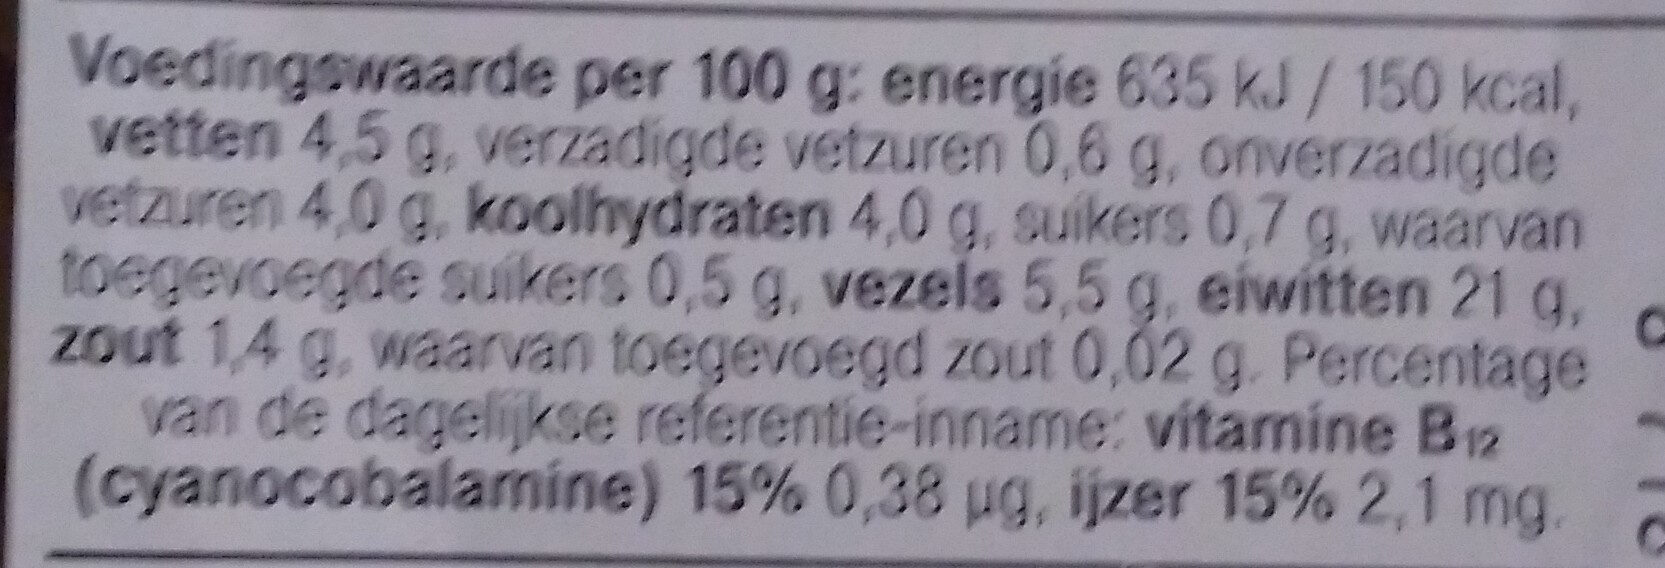 Vegetarische basis wokstukjes - Nutrition facts - nl